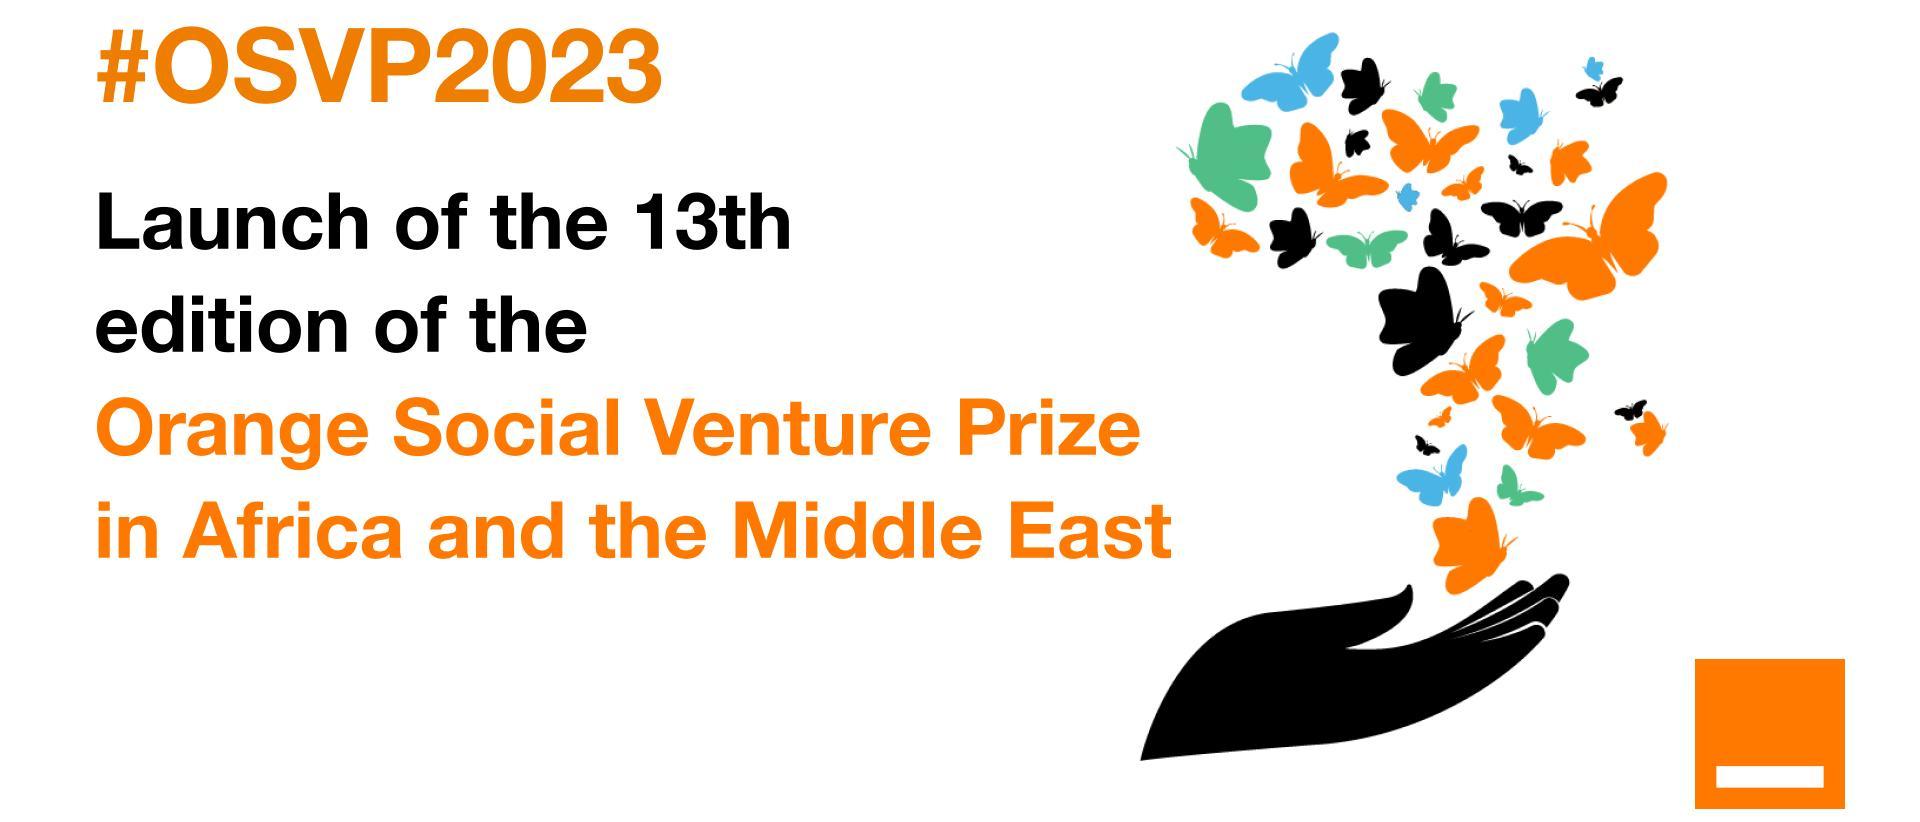 اورنچ مصر تعلن فتح باب التقدم للنسخة المحلية من مسابقة الشركات الناشئة Orange Social Venture  2023